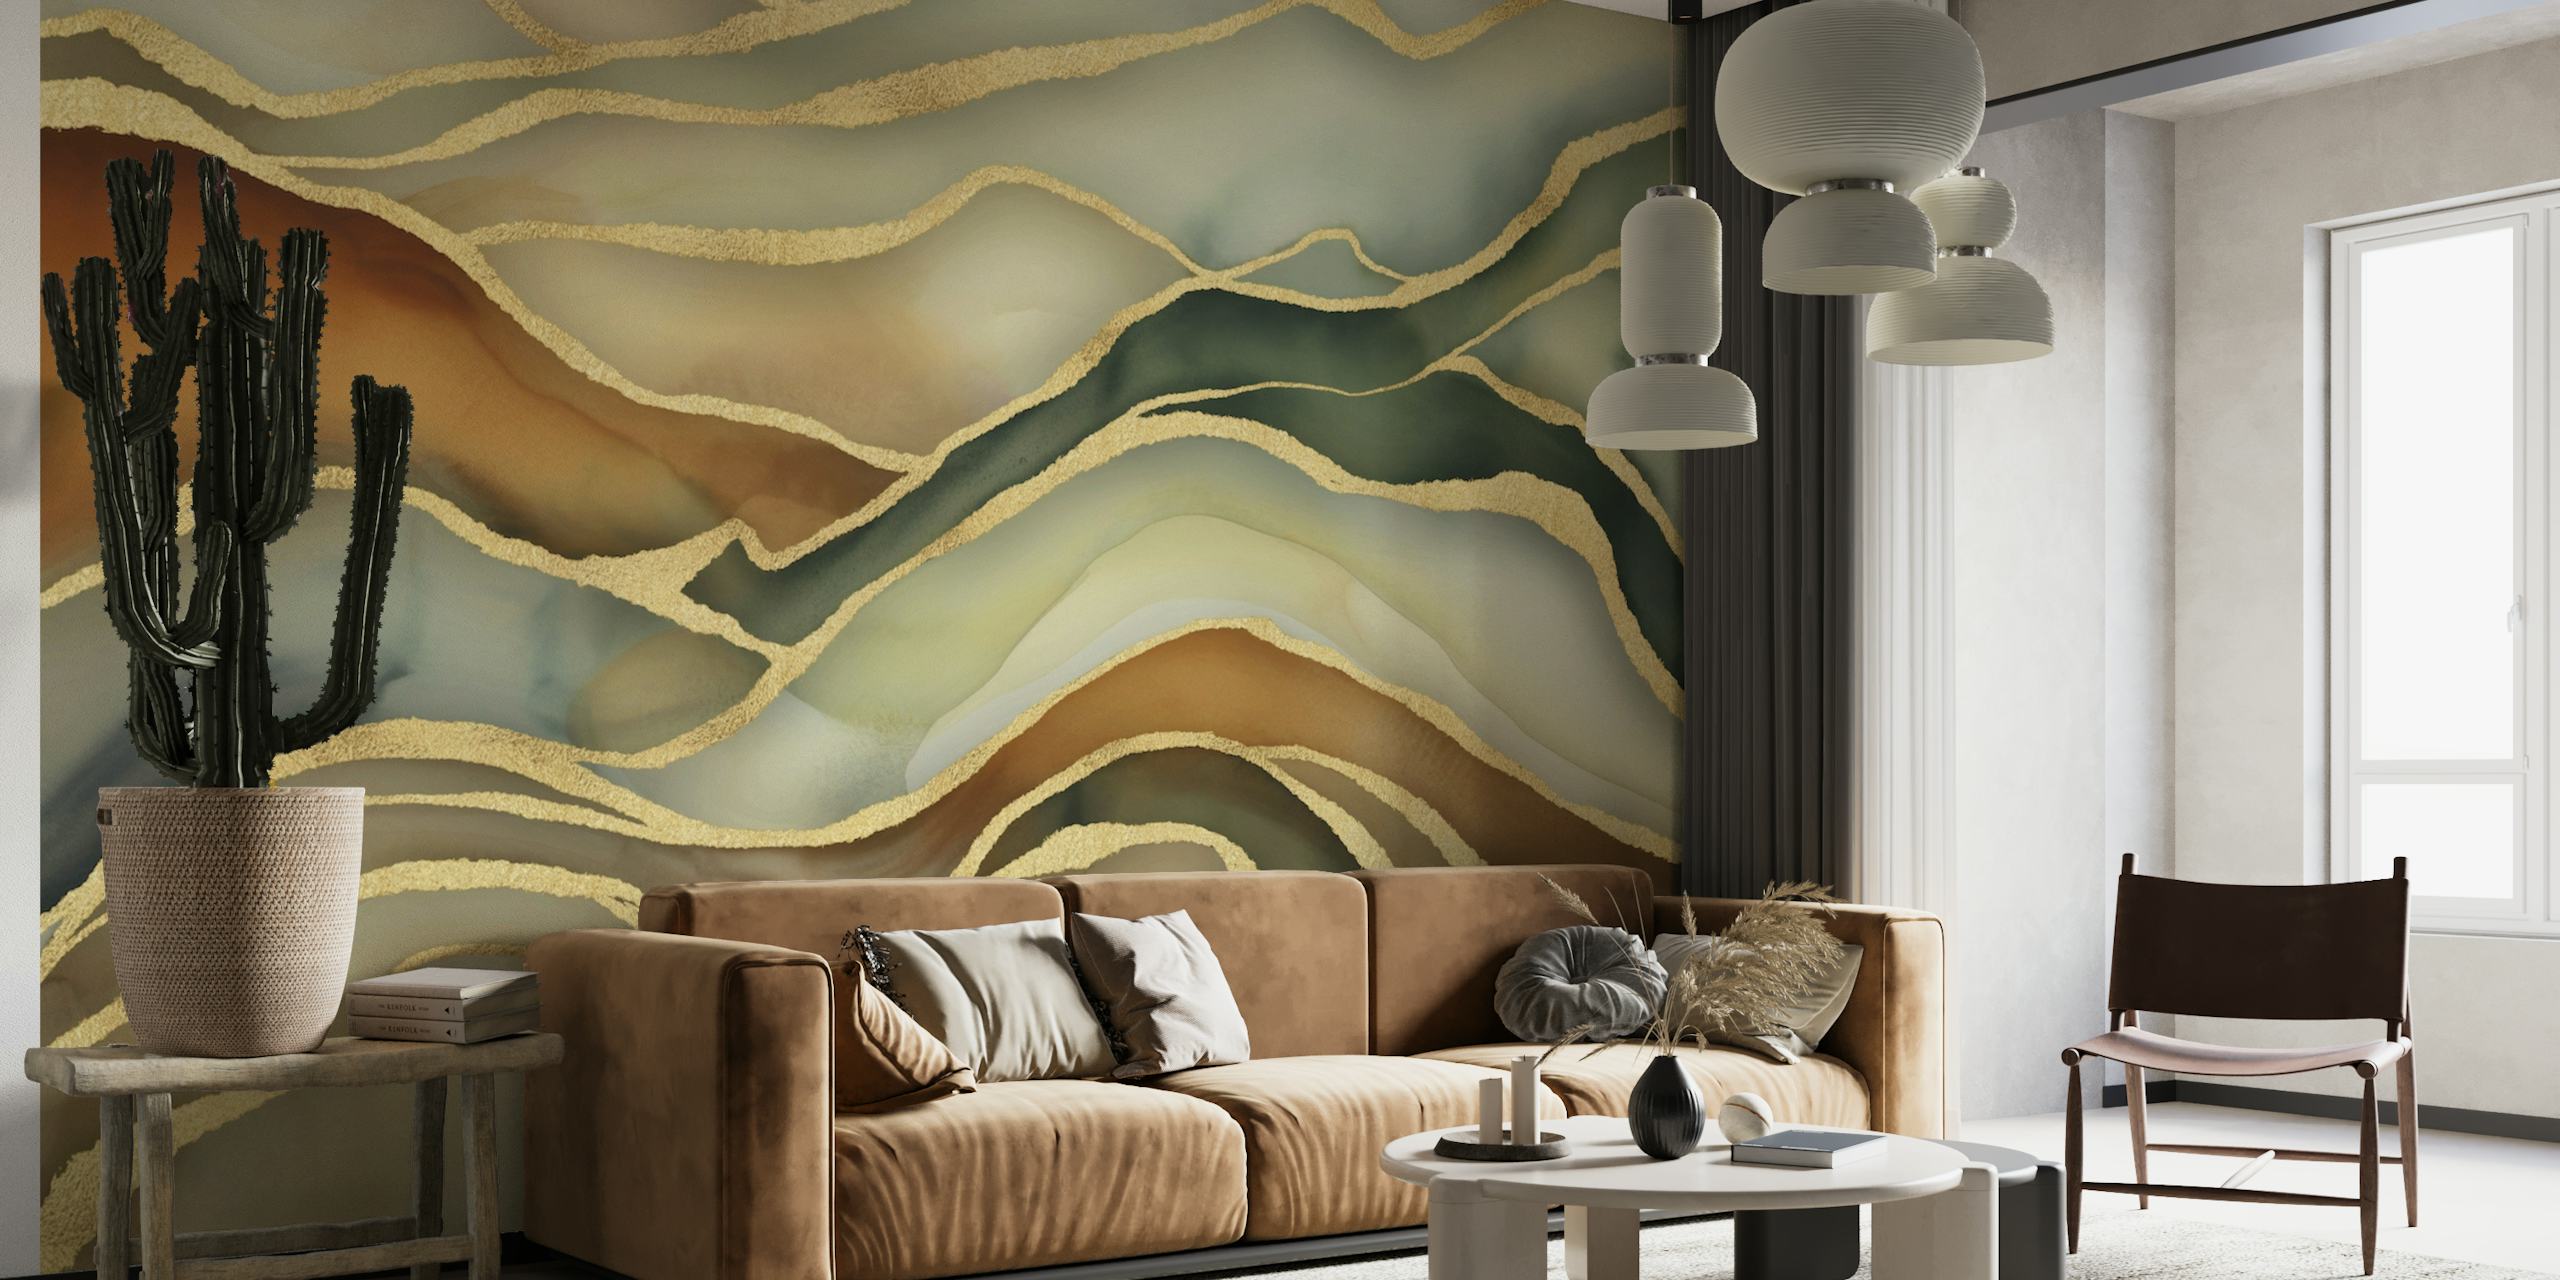 Abstrakt landskapsmur i marmor i bruna, gröna och guldtoner